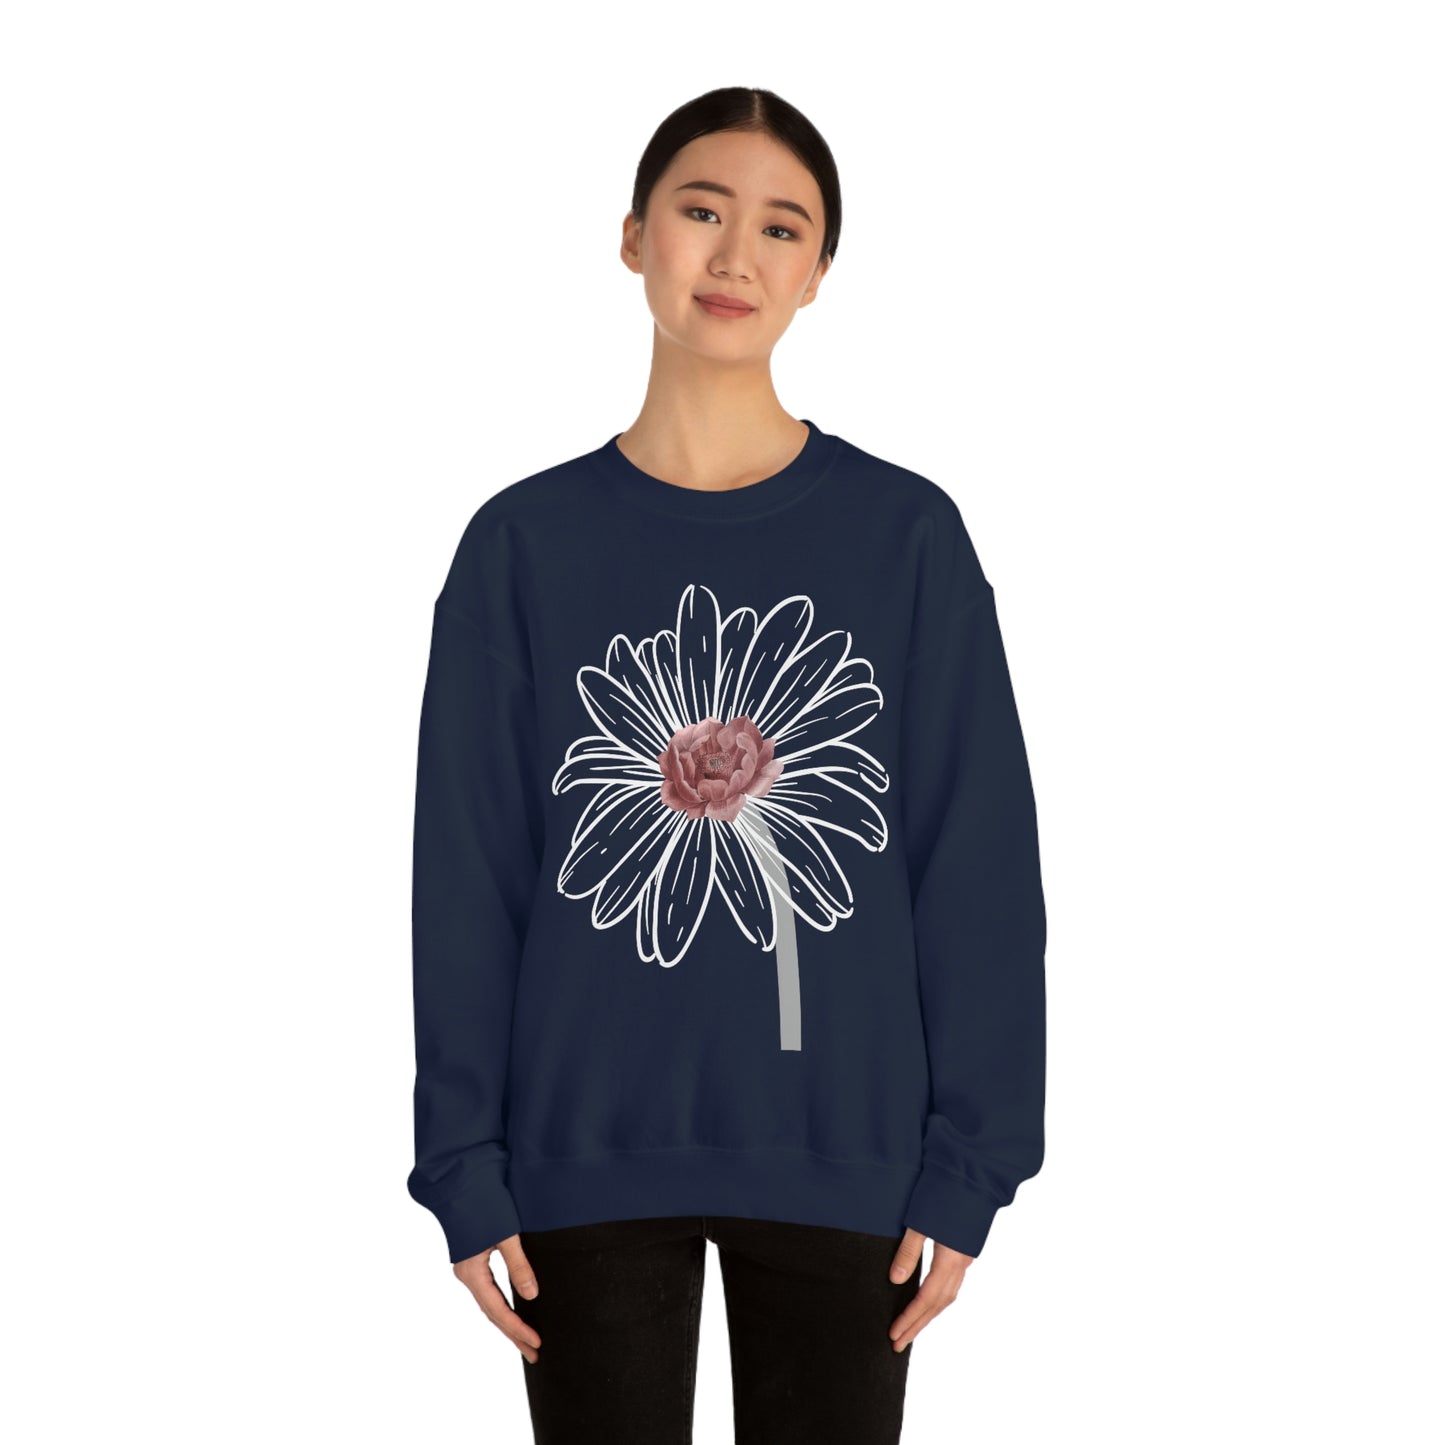 Floral Sweatshirt, Wildflower Sweatshirt, Flower sweatshirt, Wild Flowers